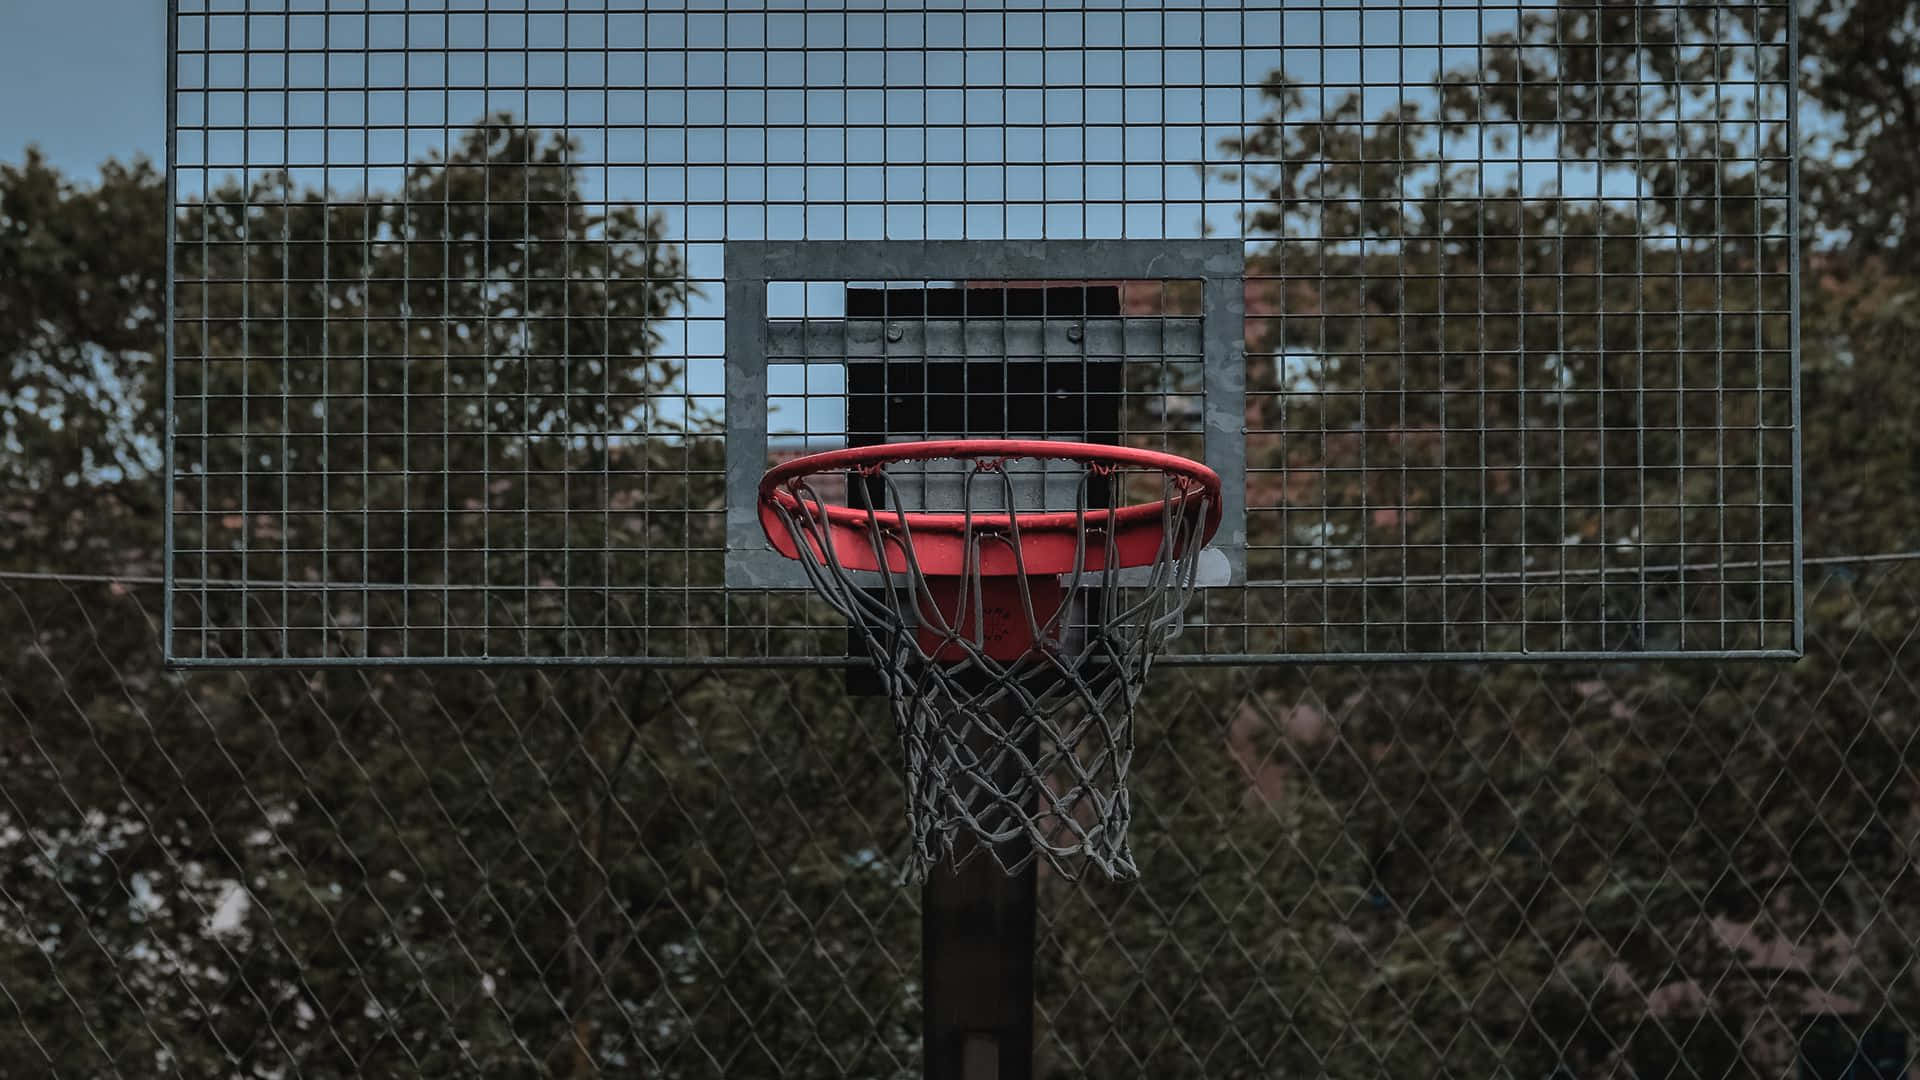 Einactionreiches Basketballspiel